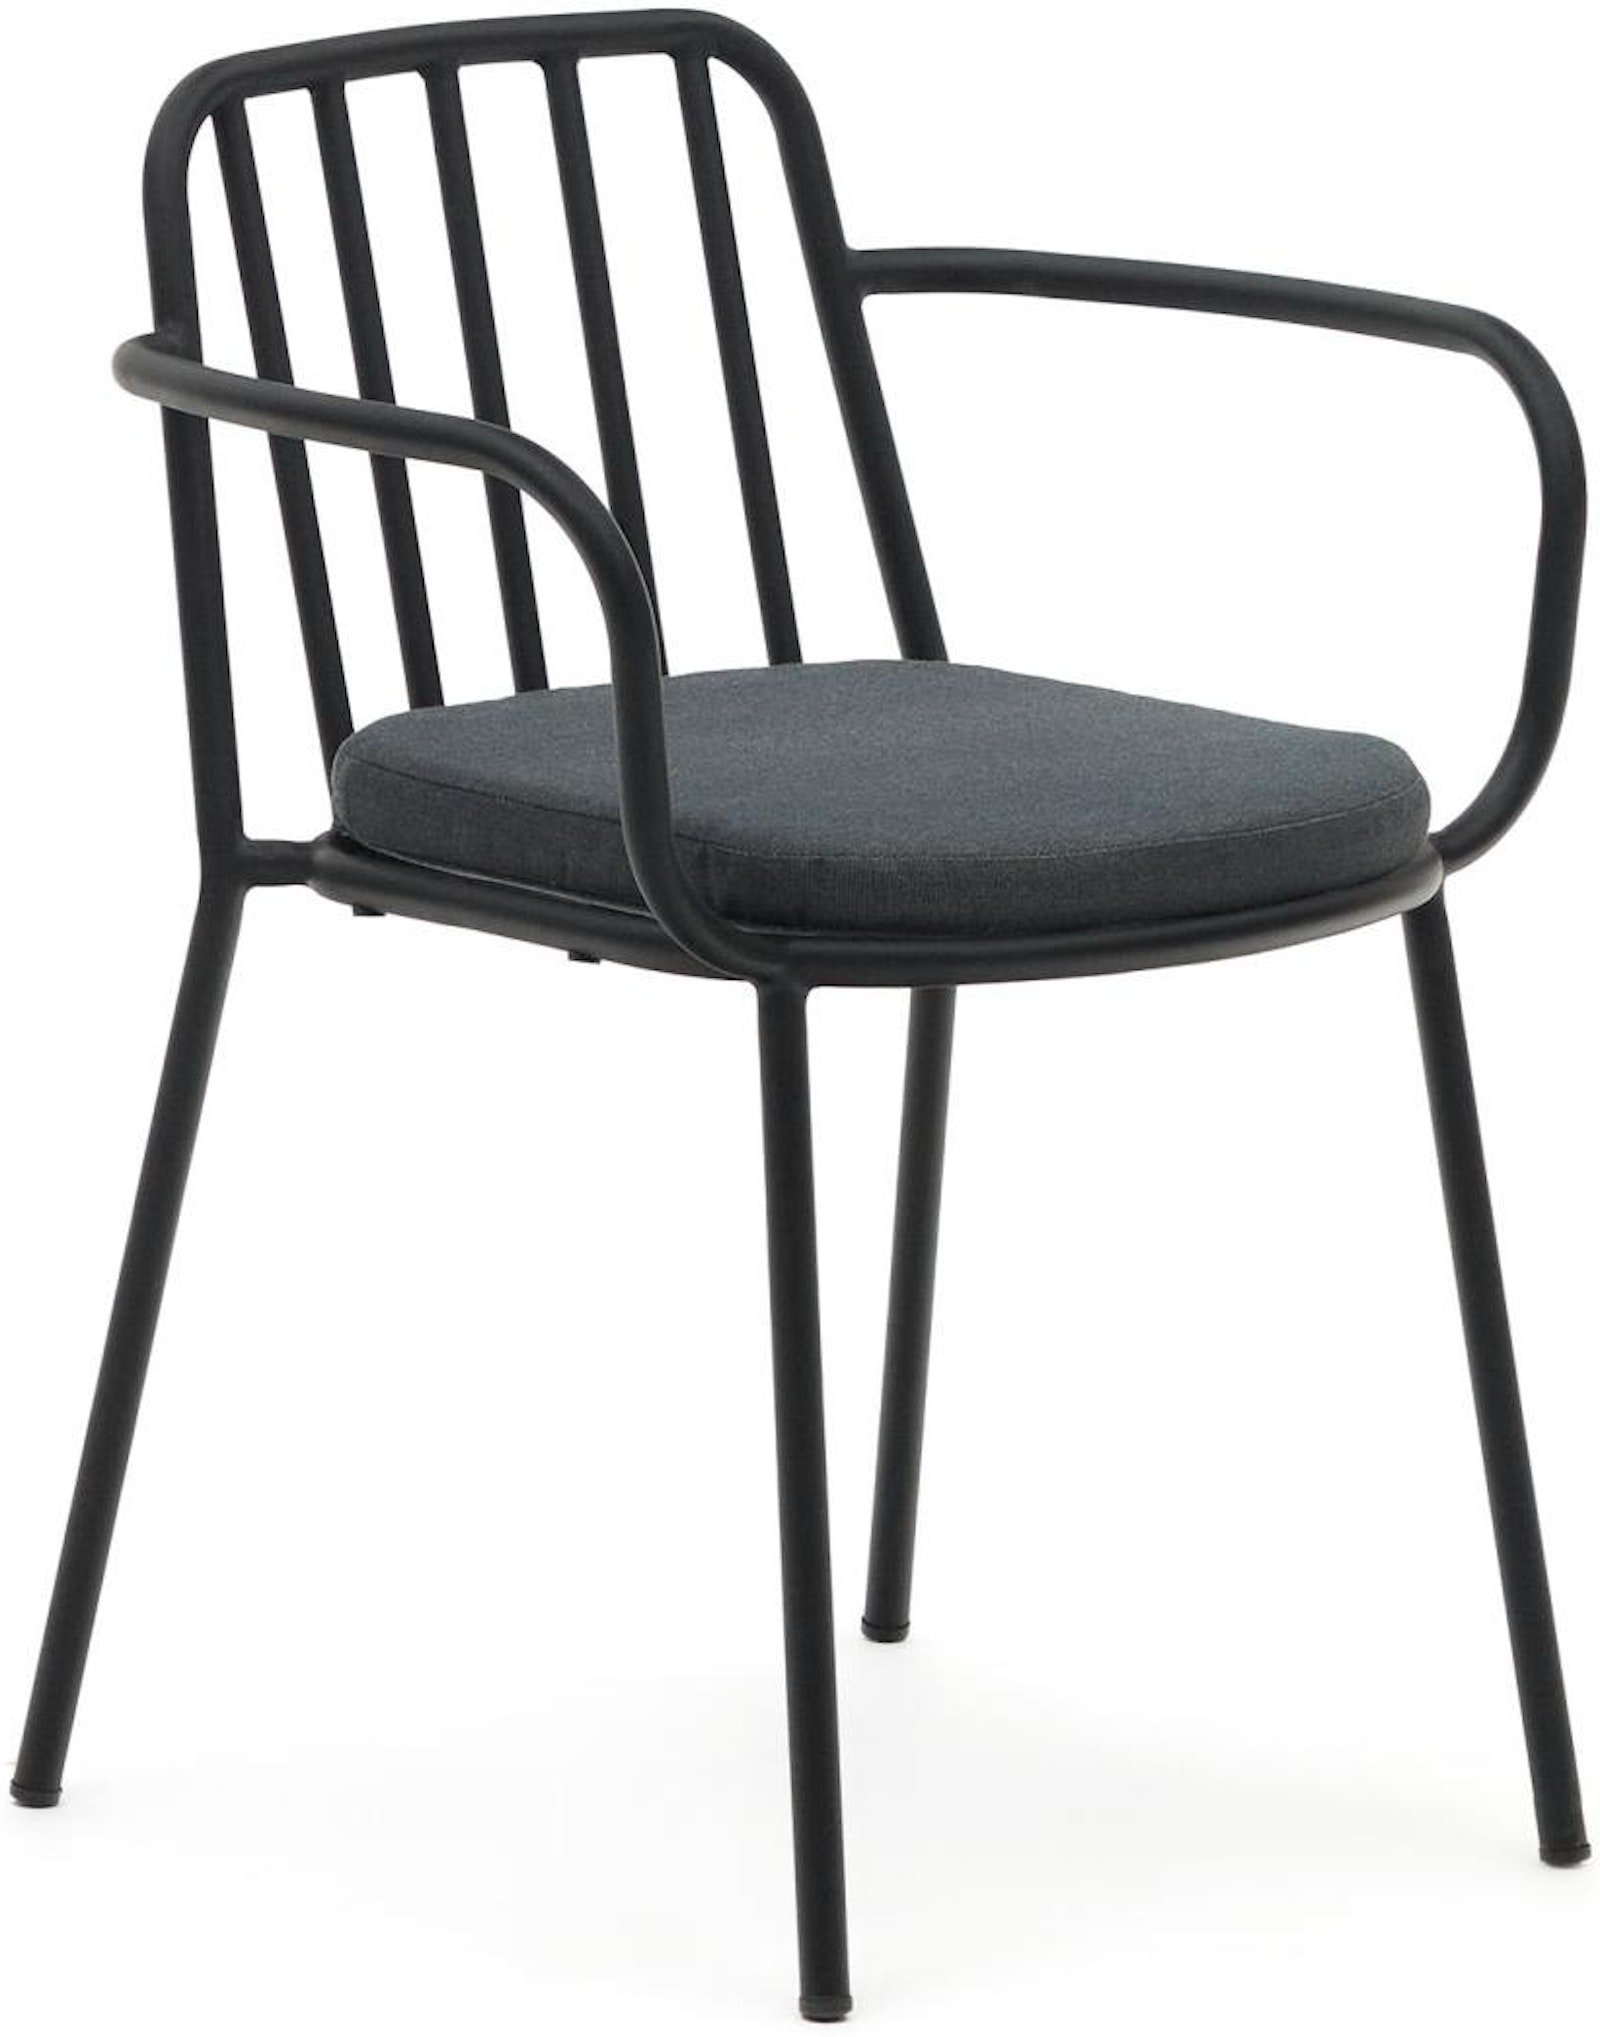 Bramant, Spisebordsstole, moderne, nordisk, metal by Laforma (H: 76 cm. x B: 60 cm. x L: 55 cm., Sort)